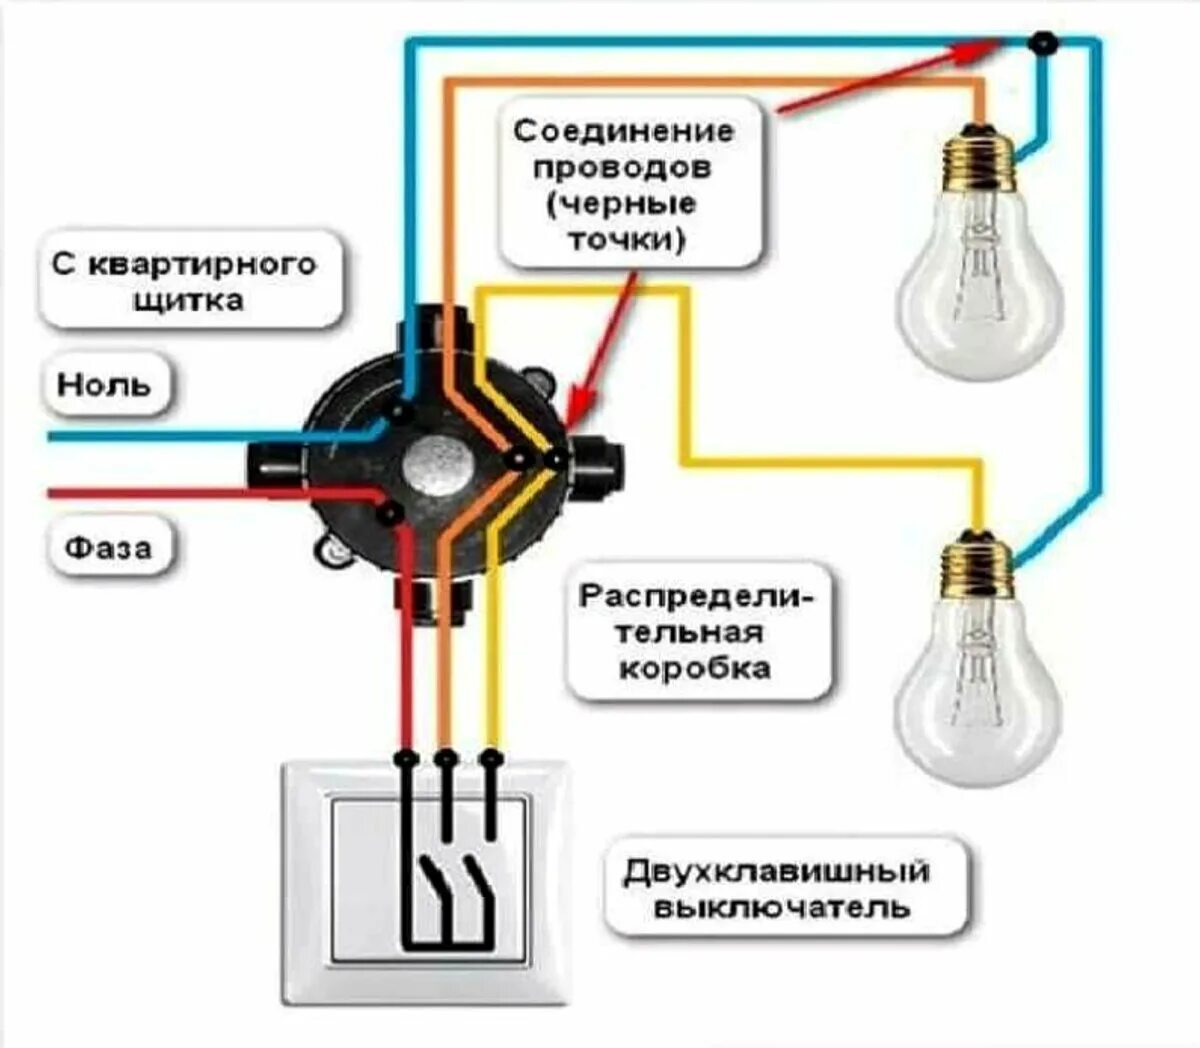 Электропроводка выключатель. Схема подключения двухклавишный выключатель, 2 лампочки, розетка. Схема подключения двойного провода на 1 выключатель. Схема подключения двойного выключателя с розеткой на 2 лампочки. Как правильно подключить выключатель к лампочке схема подключения.